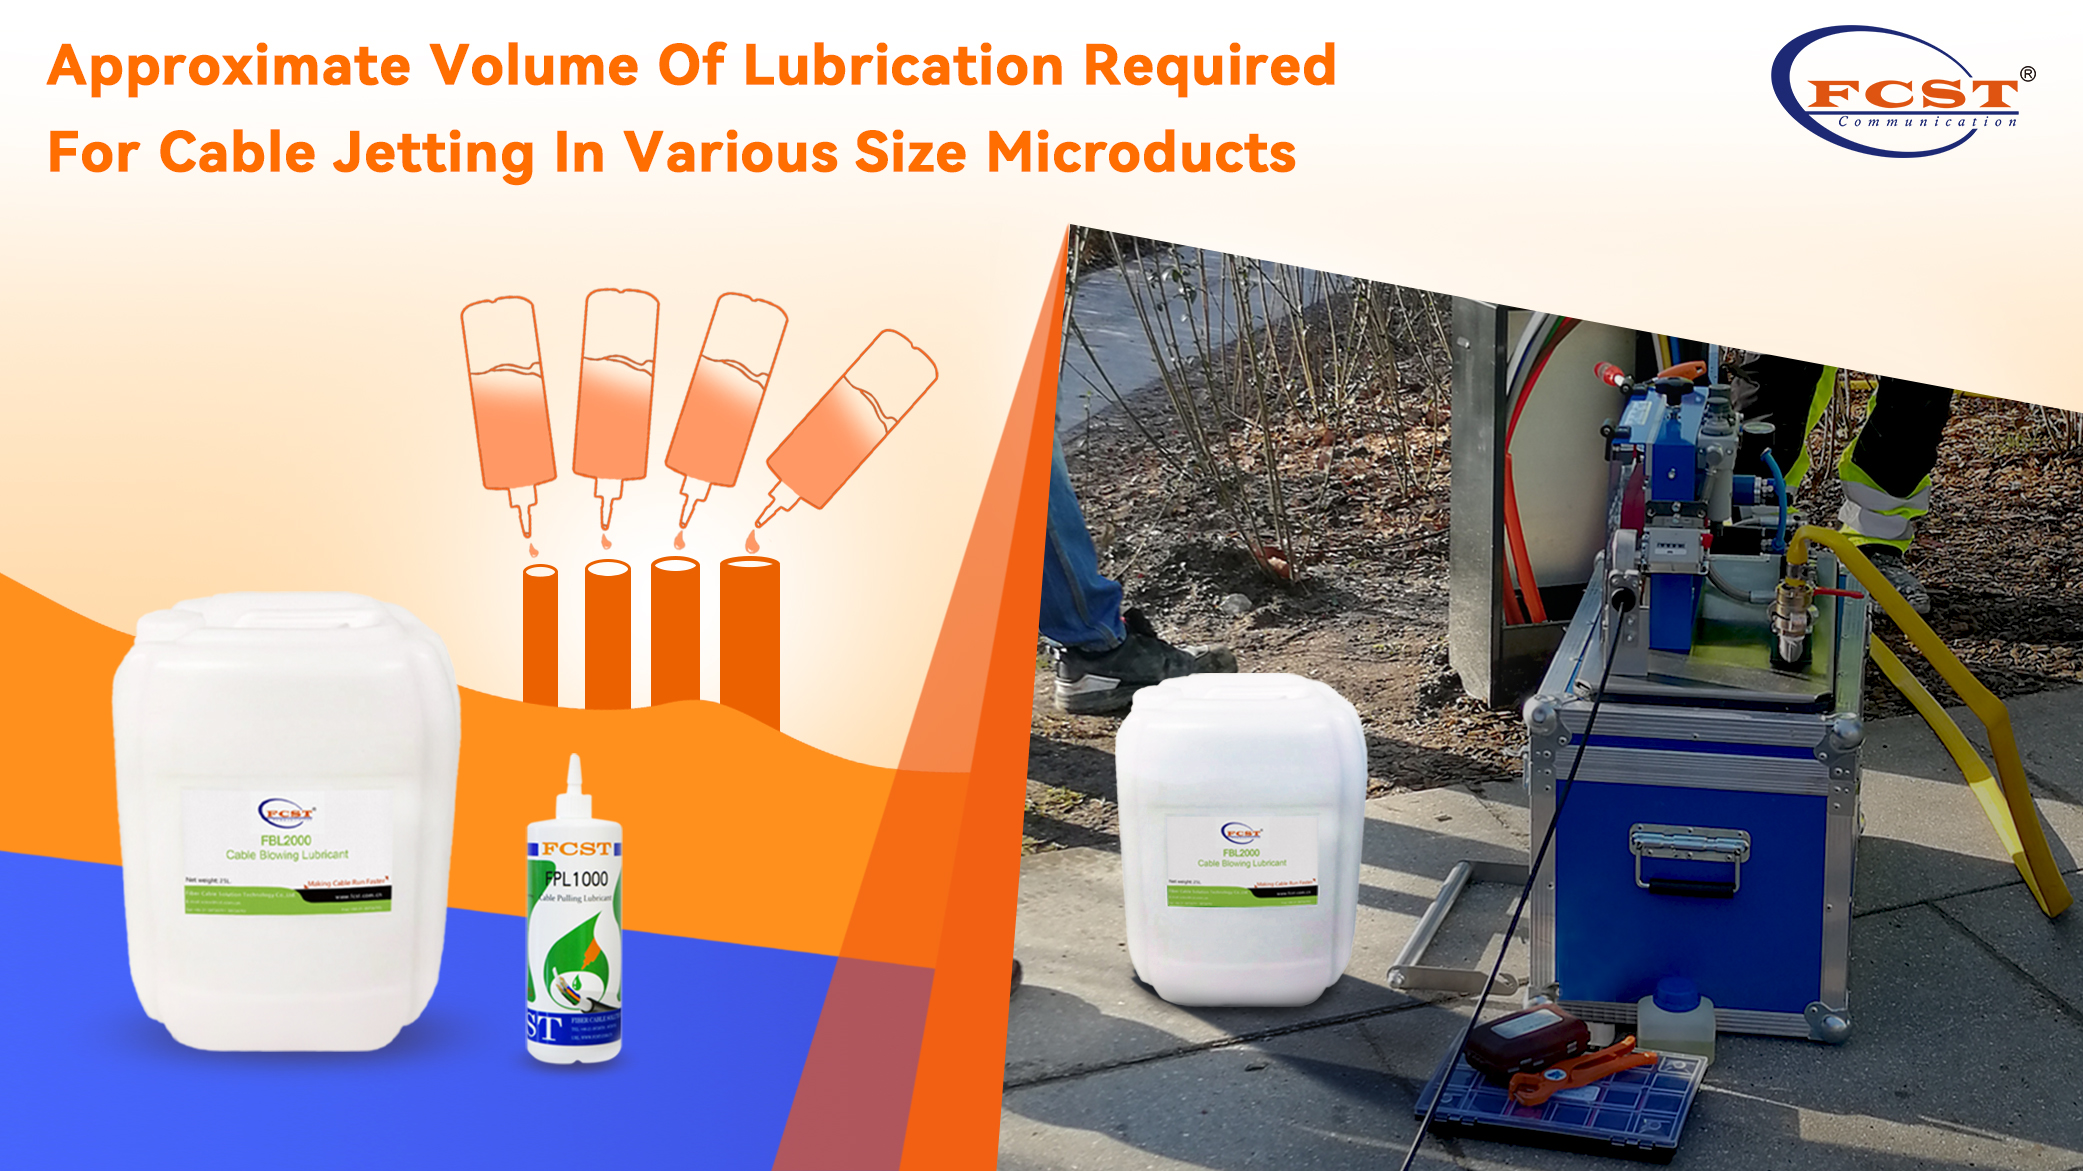 Volume approximatif de lubrification requis pour le jet de câble dans des microducts de différentes tailles